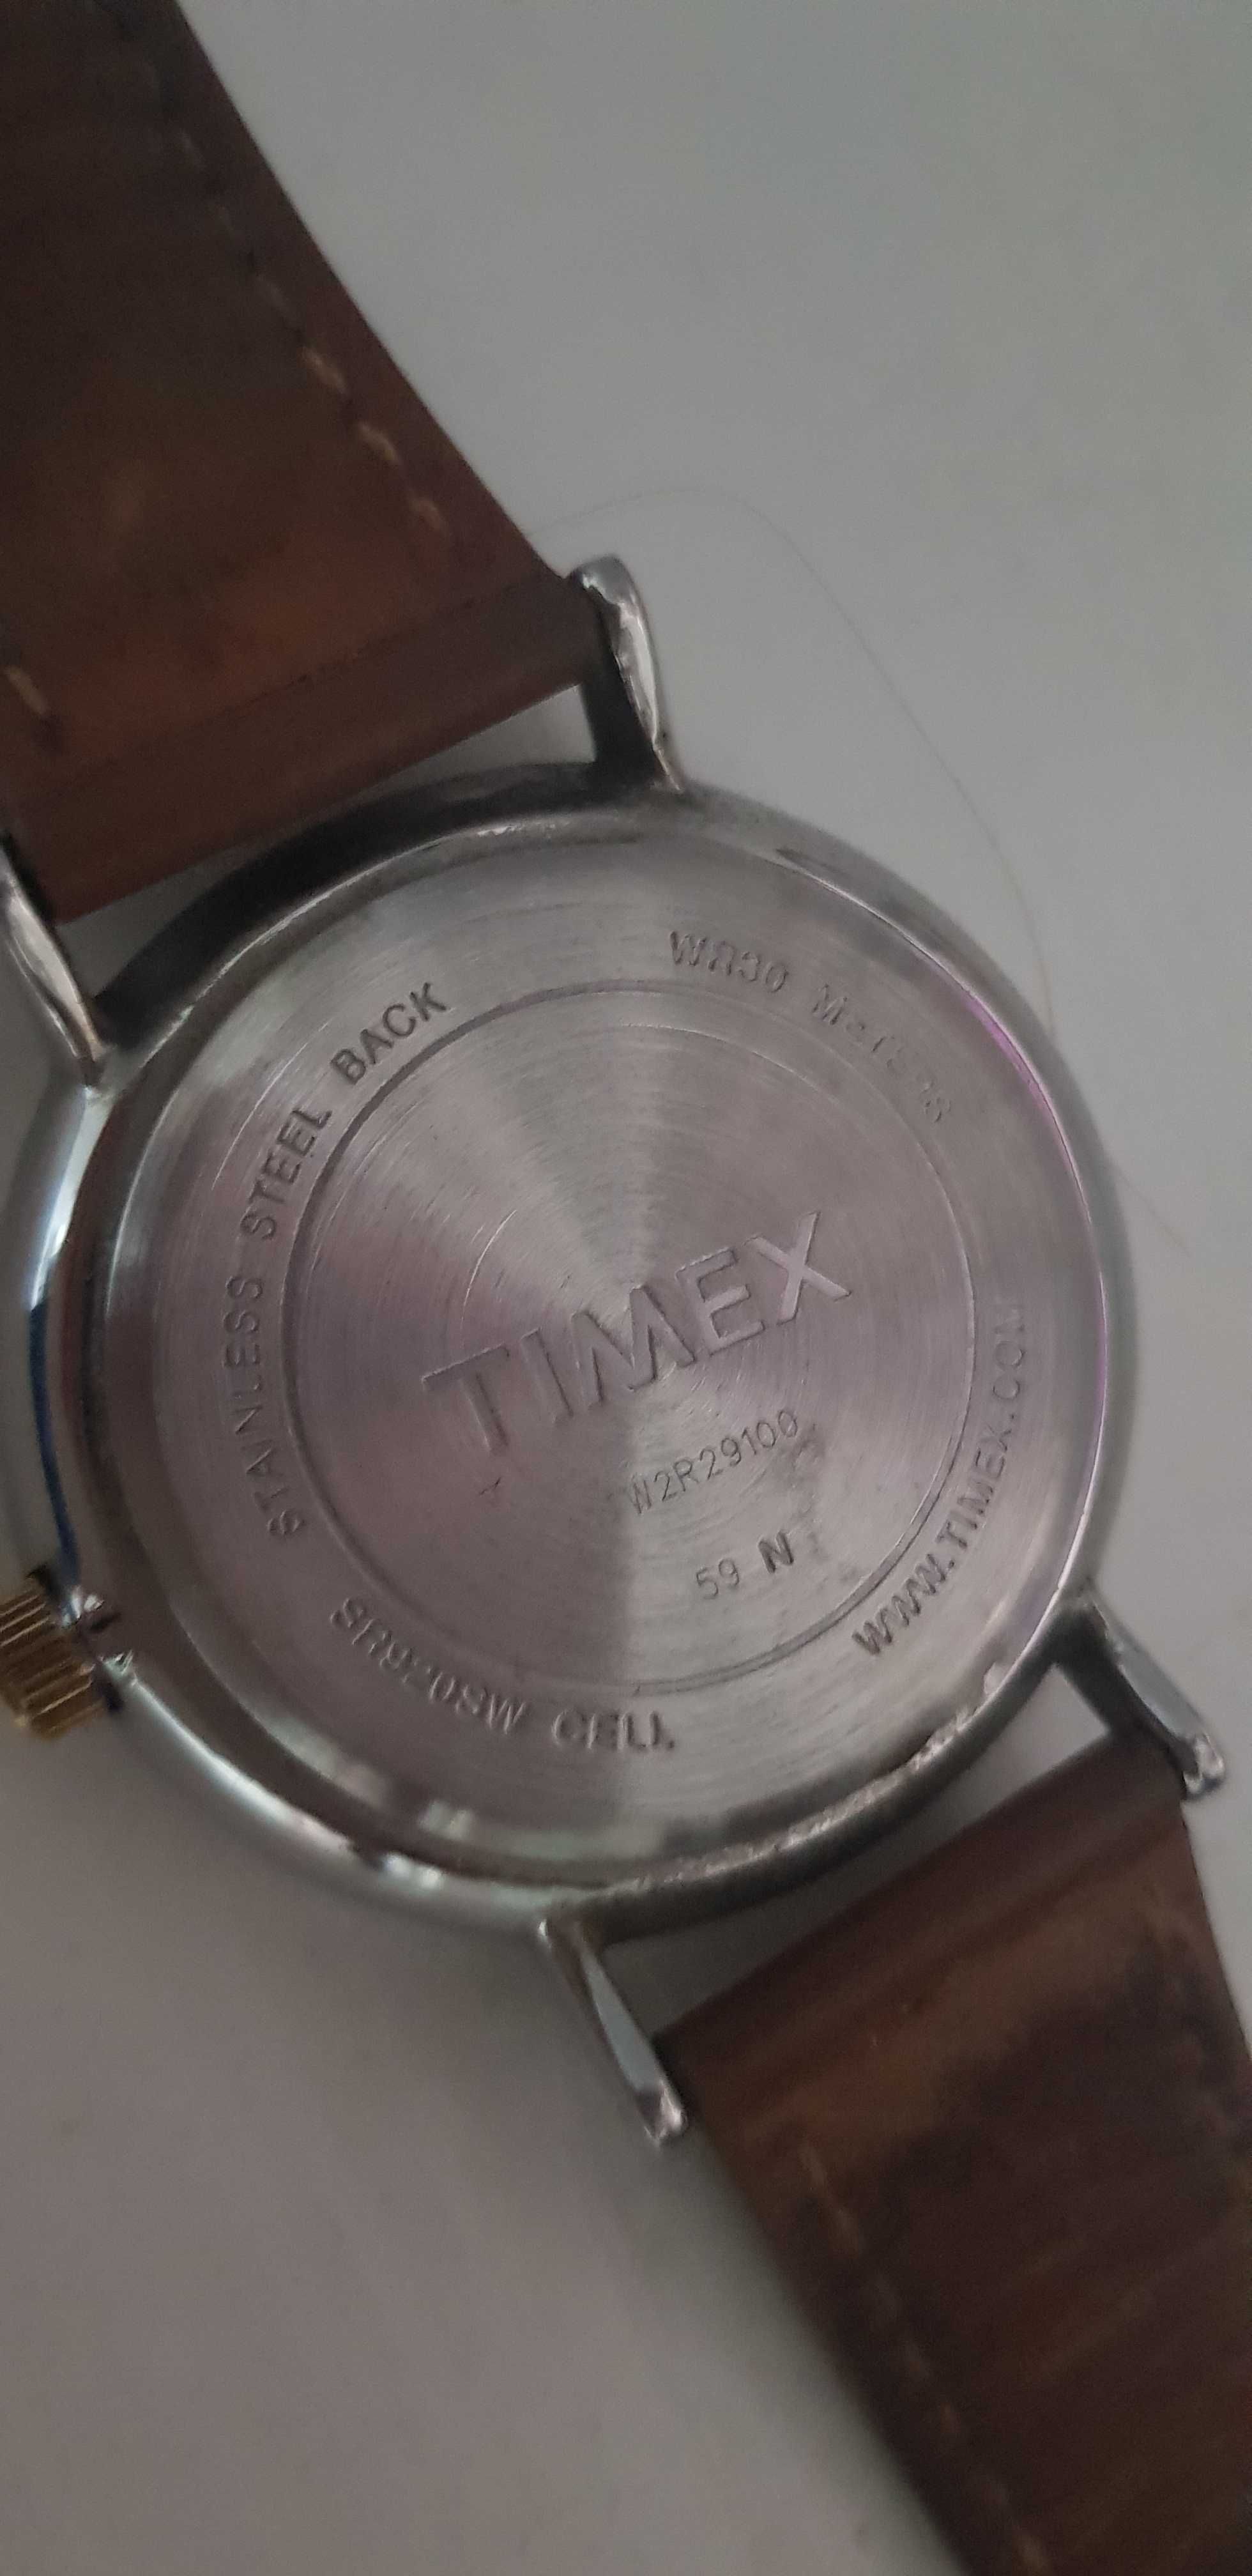 Timex zegarek męski